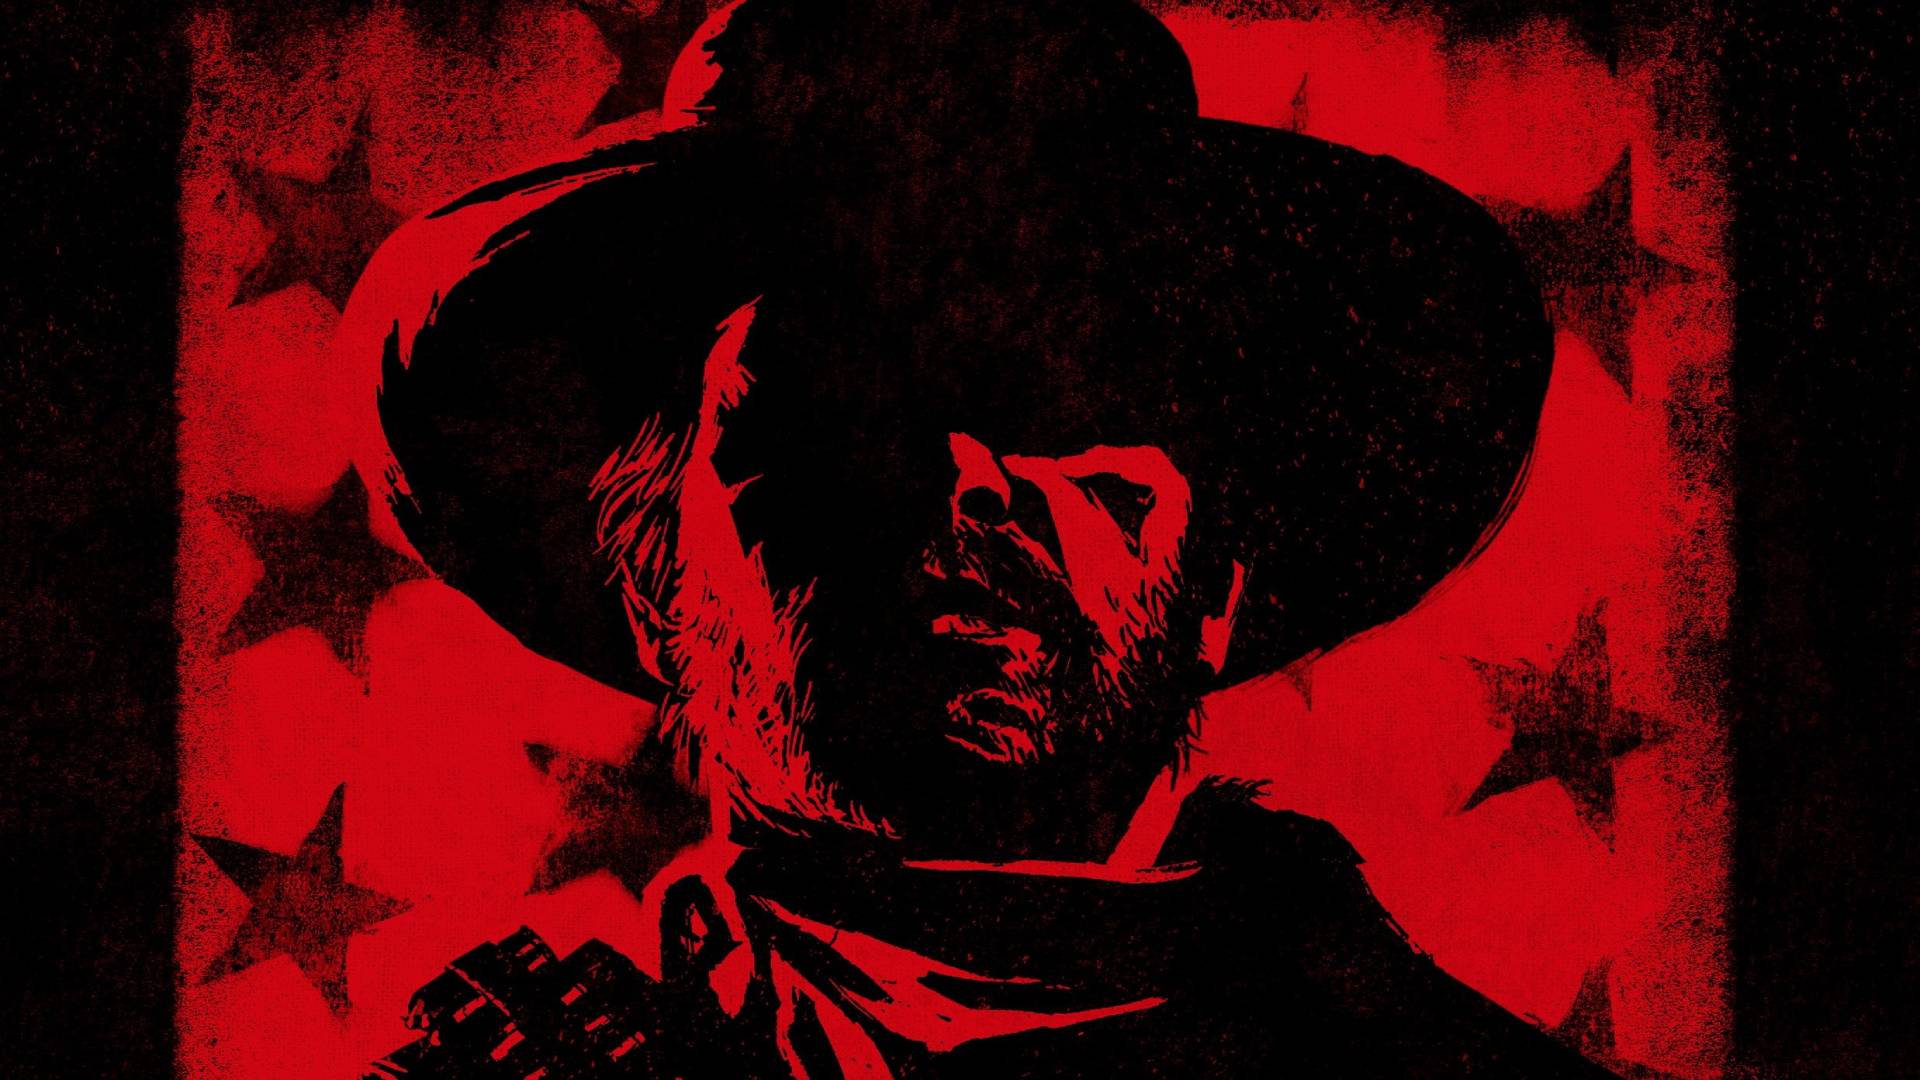 Australia menolak klasifikasi usia proyek Rockstar baru yang disebut Red Dead Redemption 2